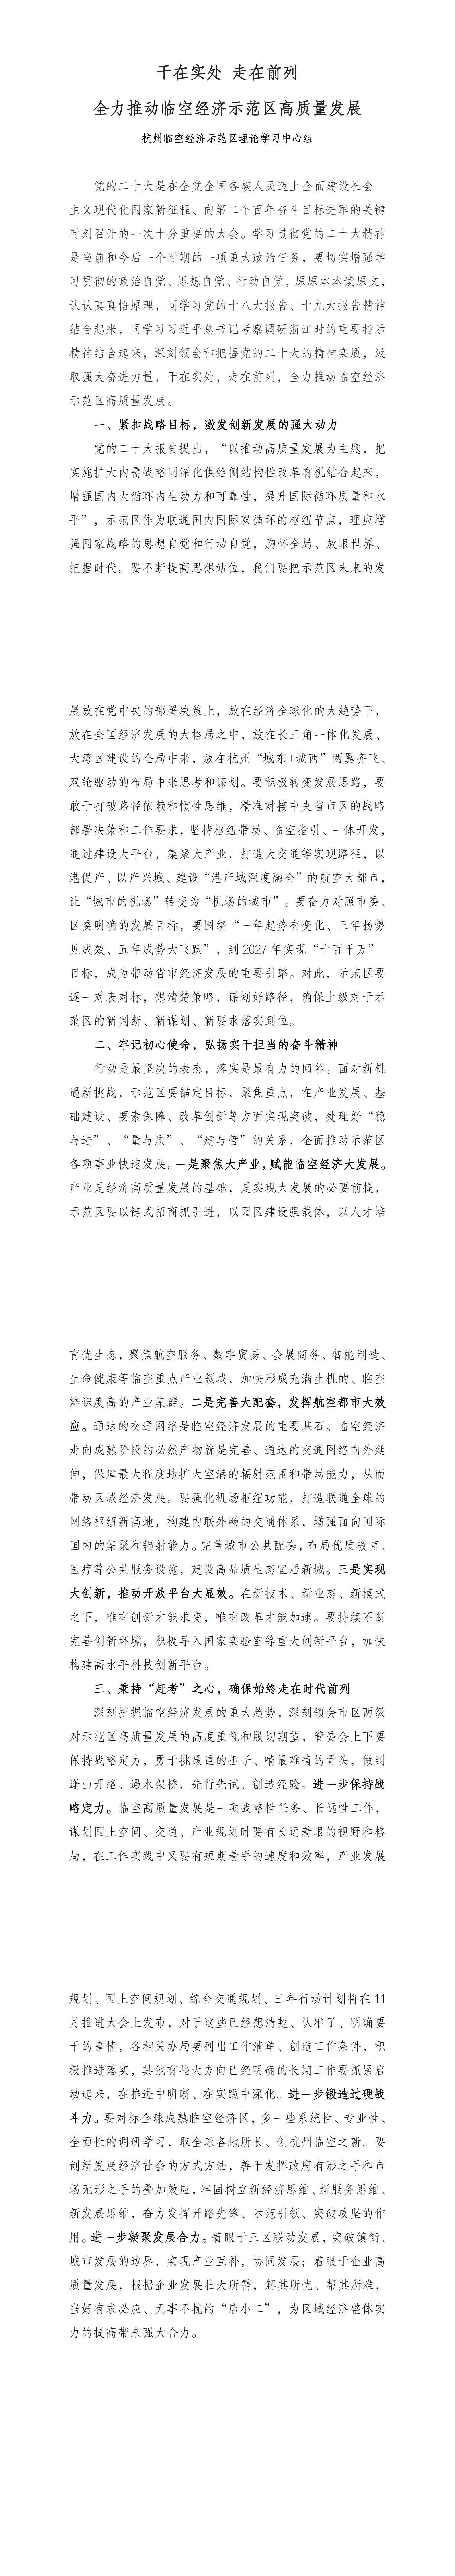 杭州临空经济示范区理论学习中心组文章_00.jpg